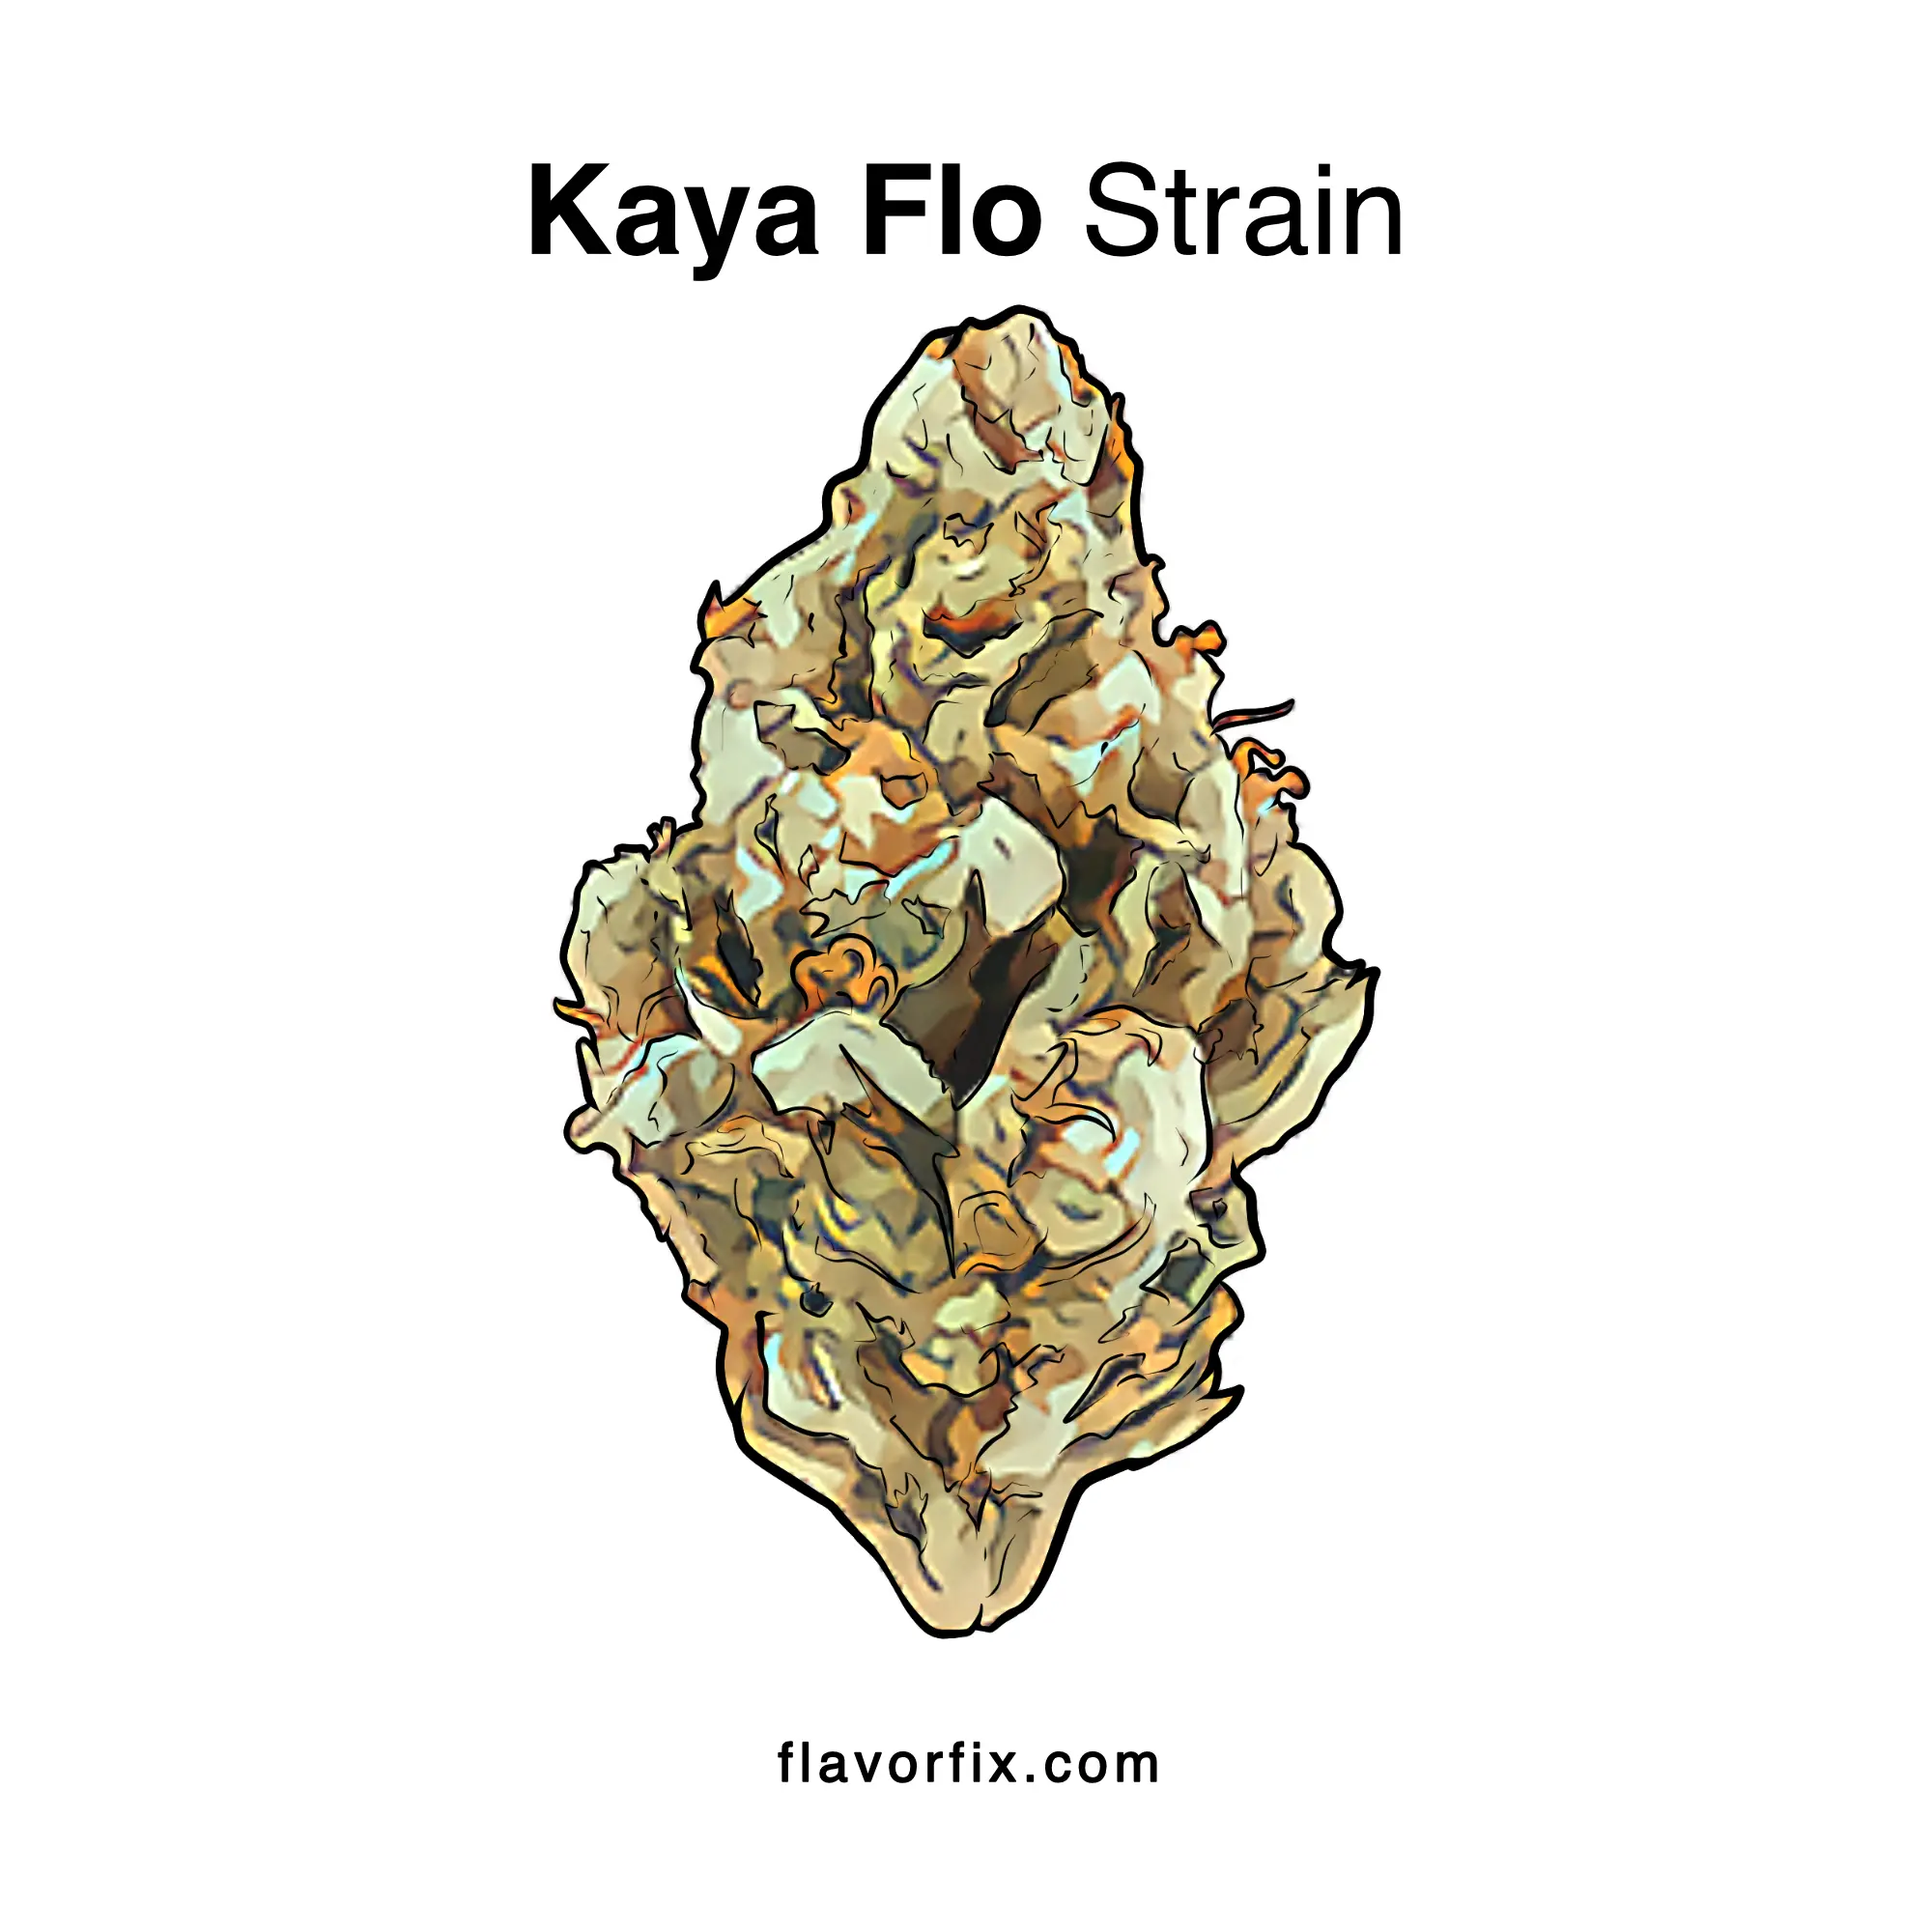 Kaya Flo Strain